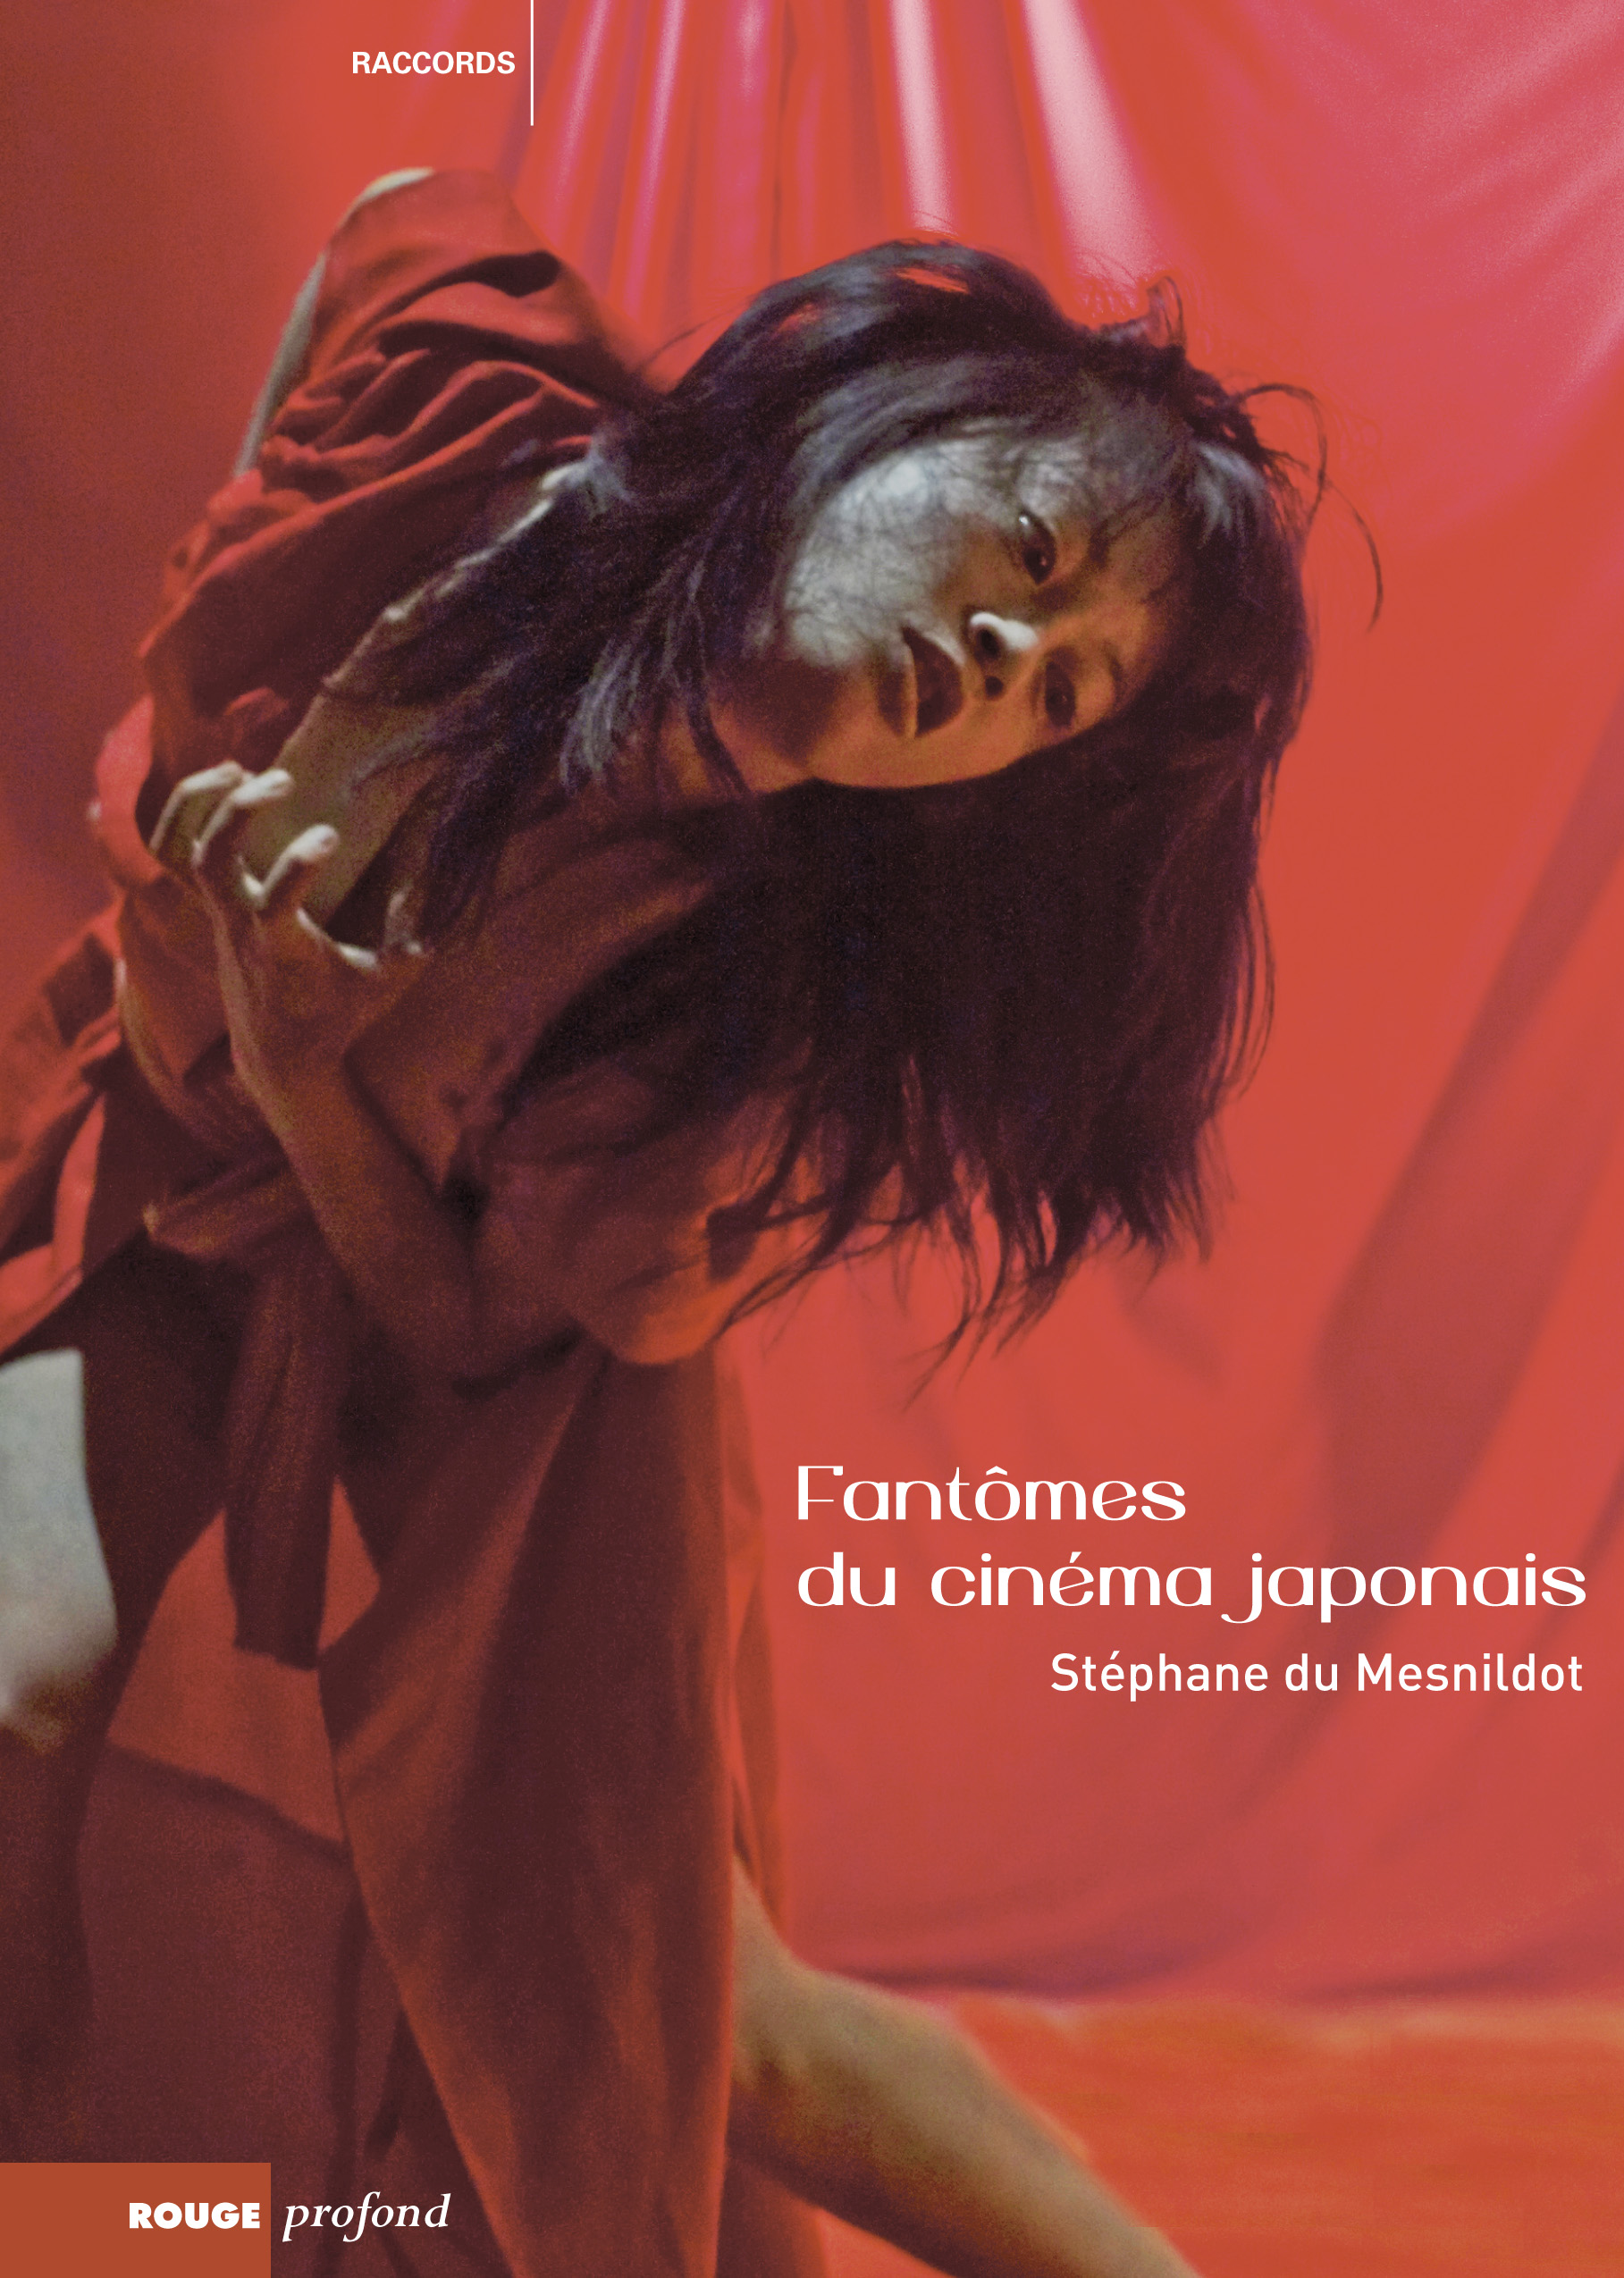 Couverture du livre "Fantômes du cinéma japonais" de Stéphane du Mesnildot